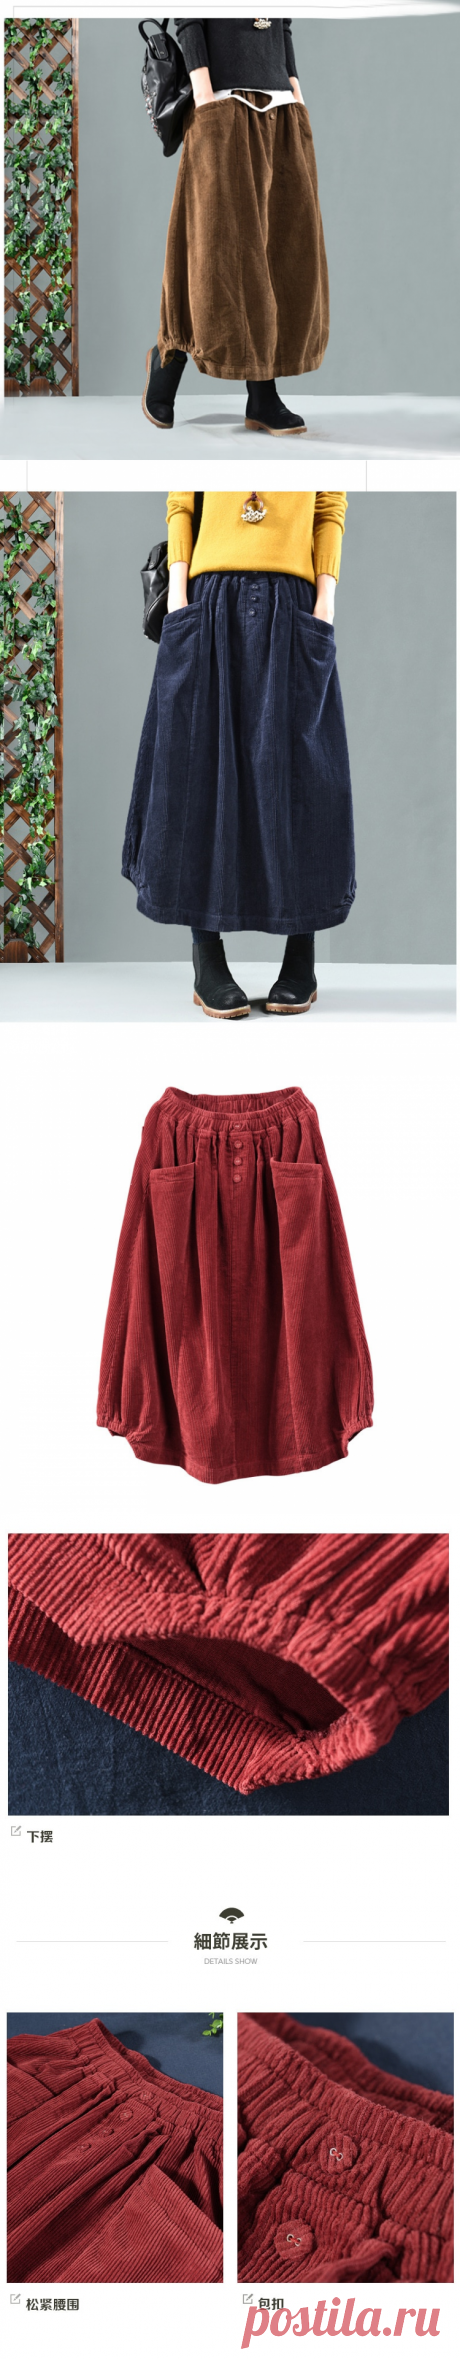 Женская Вельветовая юбка с карманами, однотонная свободная винтажная юбка с поясом на резинке, Осень зима 2019|Юбки| | АлиЭкспресс